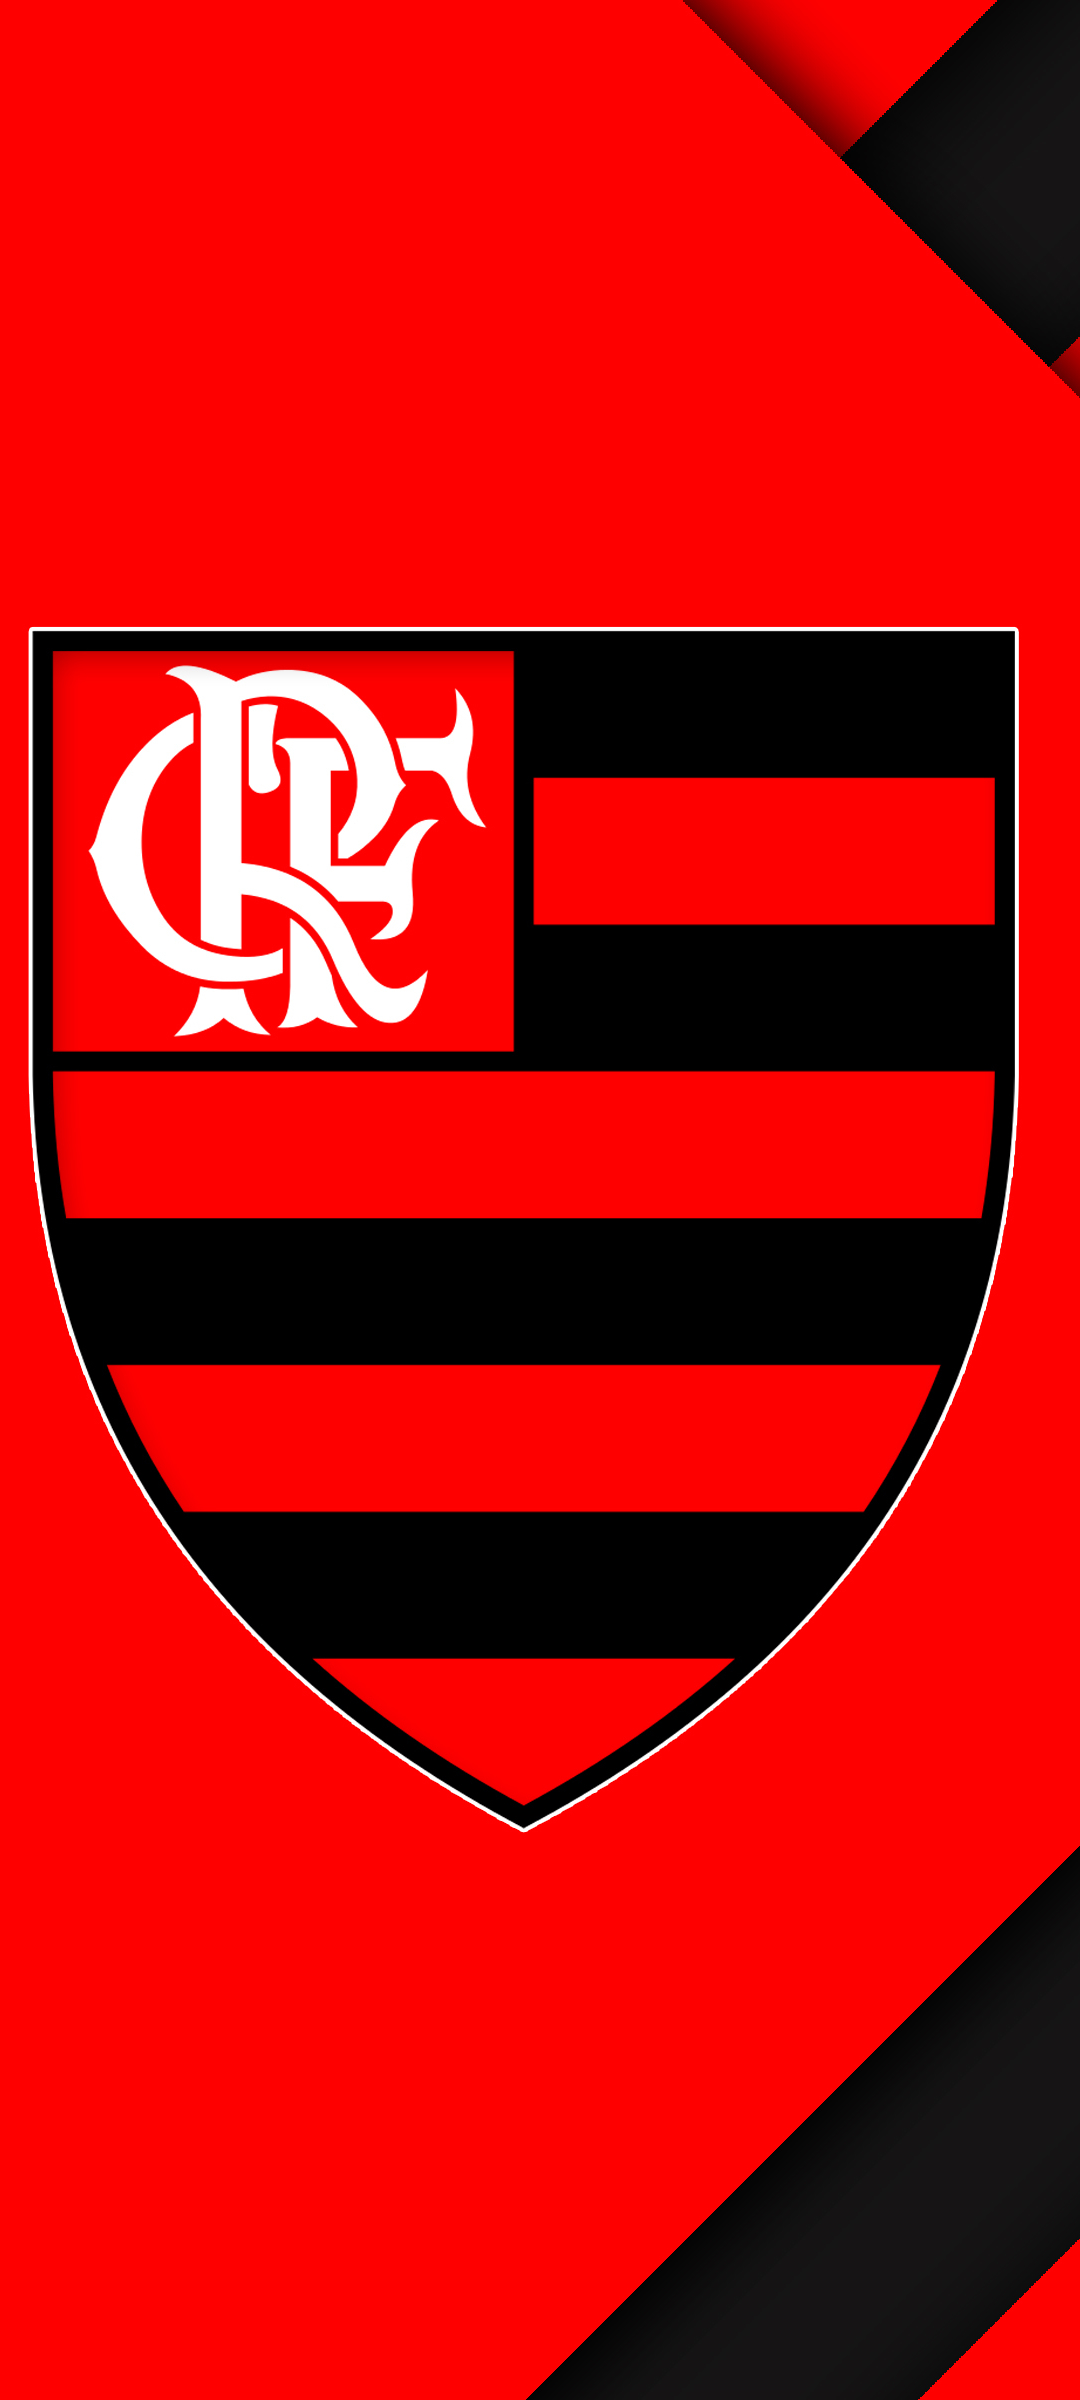 clube de regatas do flamengo, sports, soccer, logo phone background